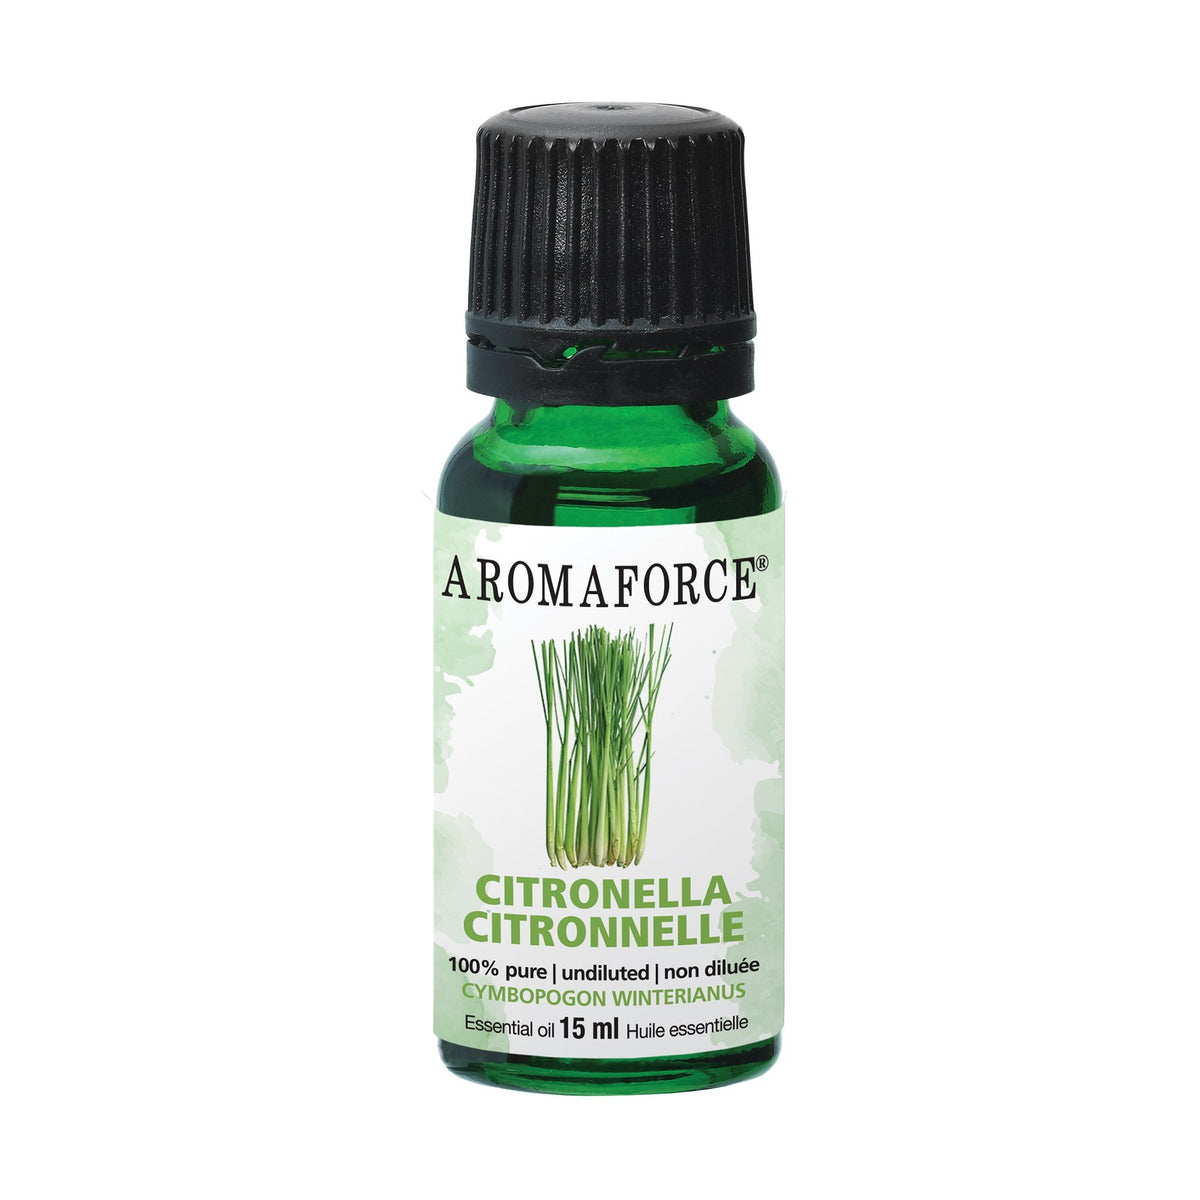 Aromaforce Citronella Essential Oil 15mL - A.Vogel Canada